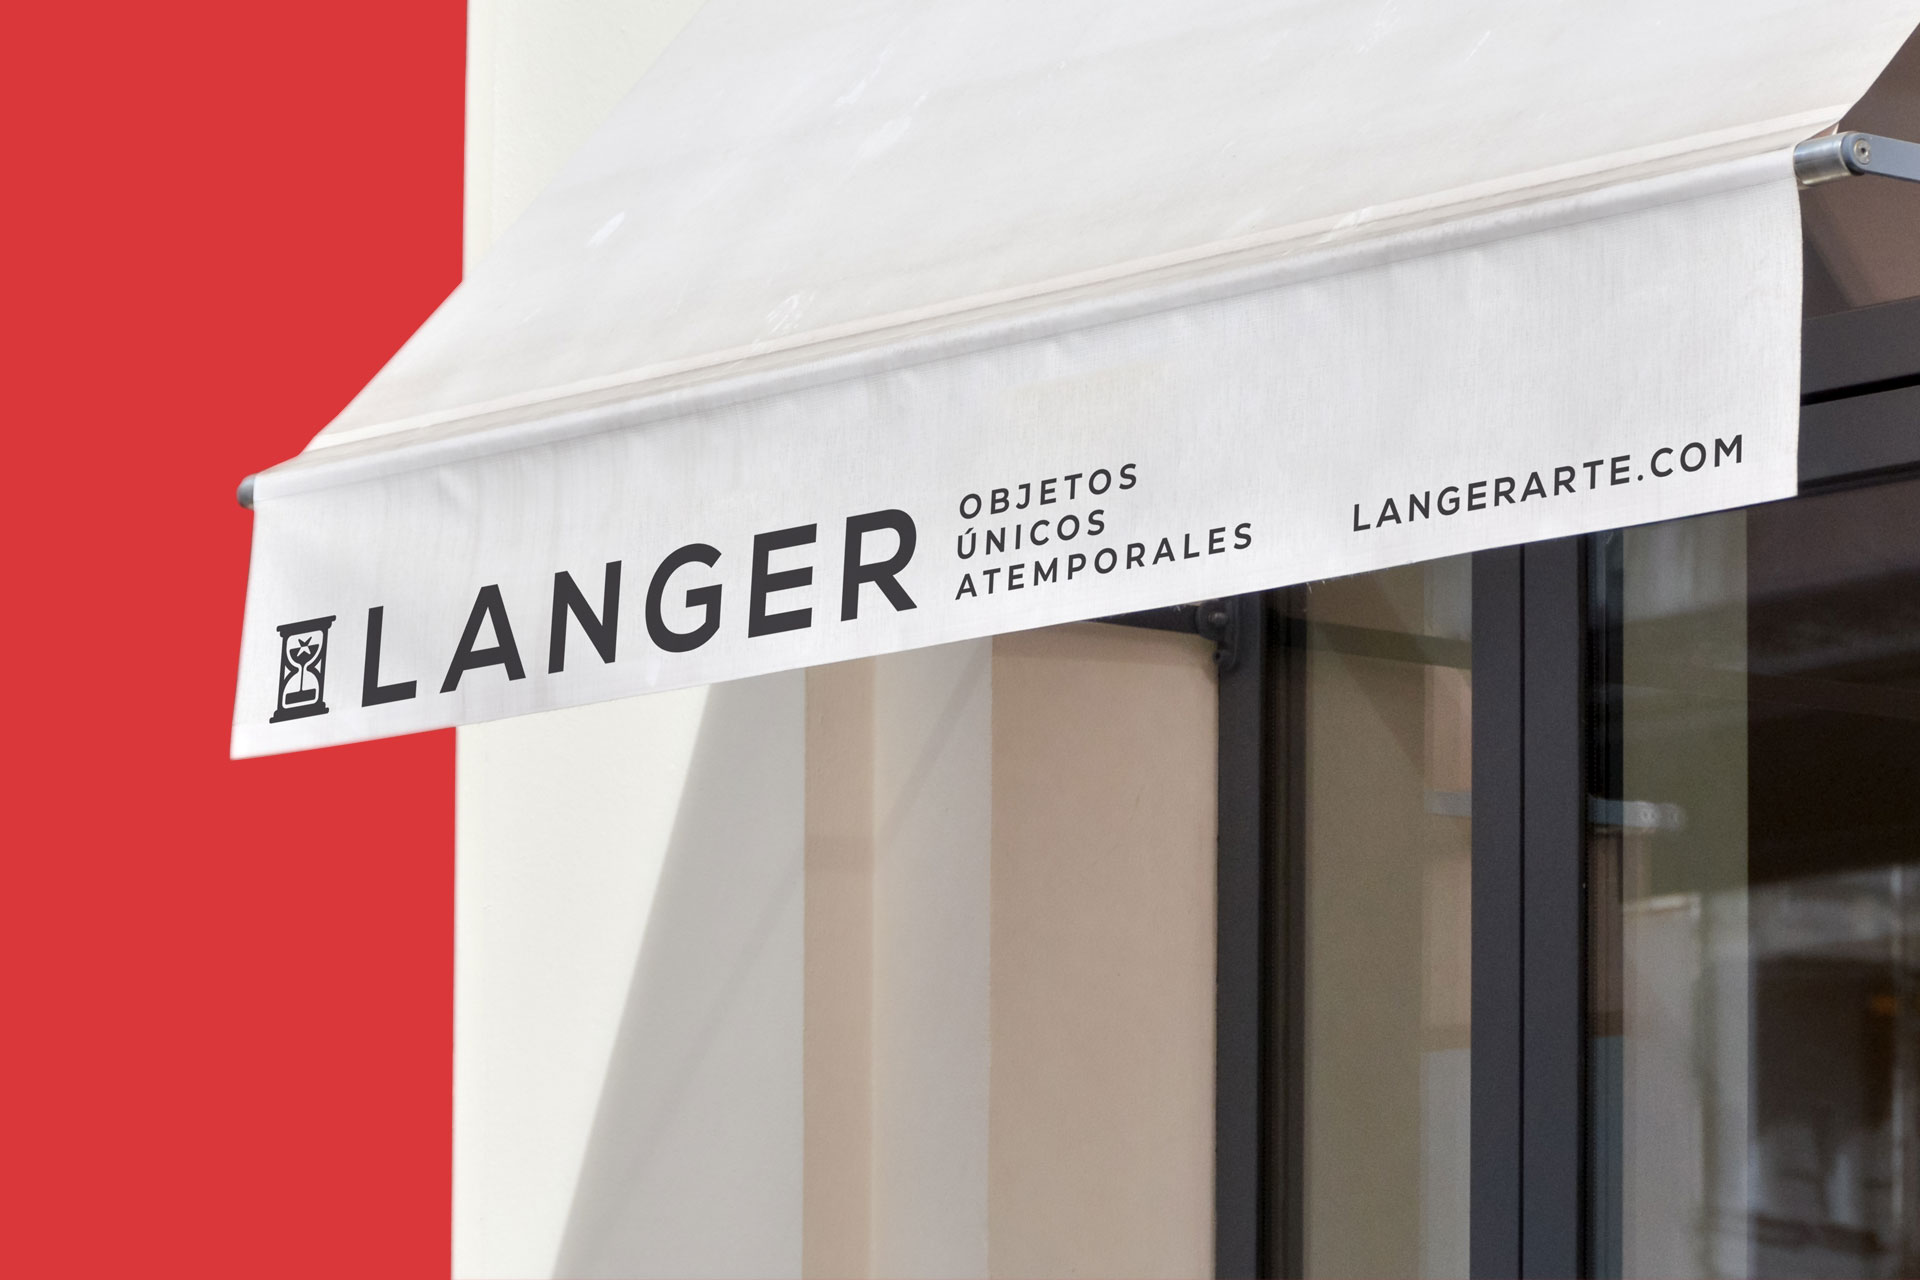 toldo blanco con logo de Langer, acorde a identidad de marca del negocio